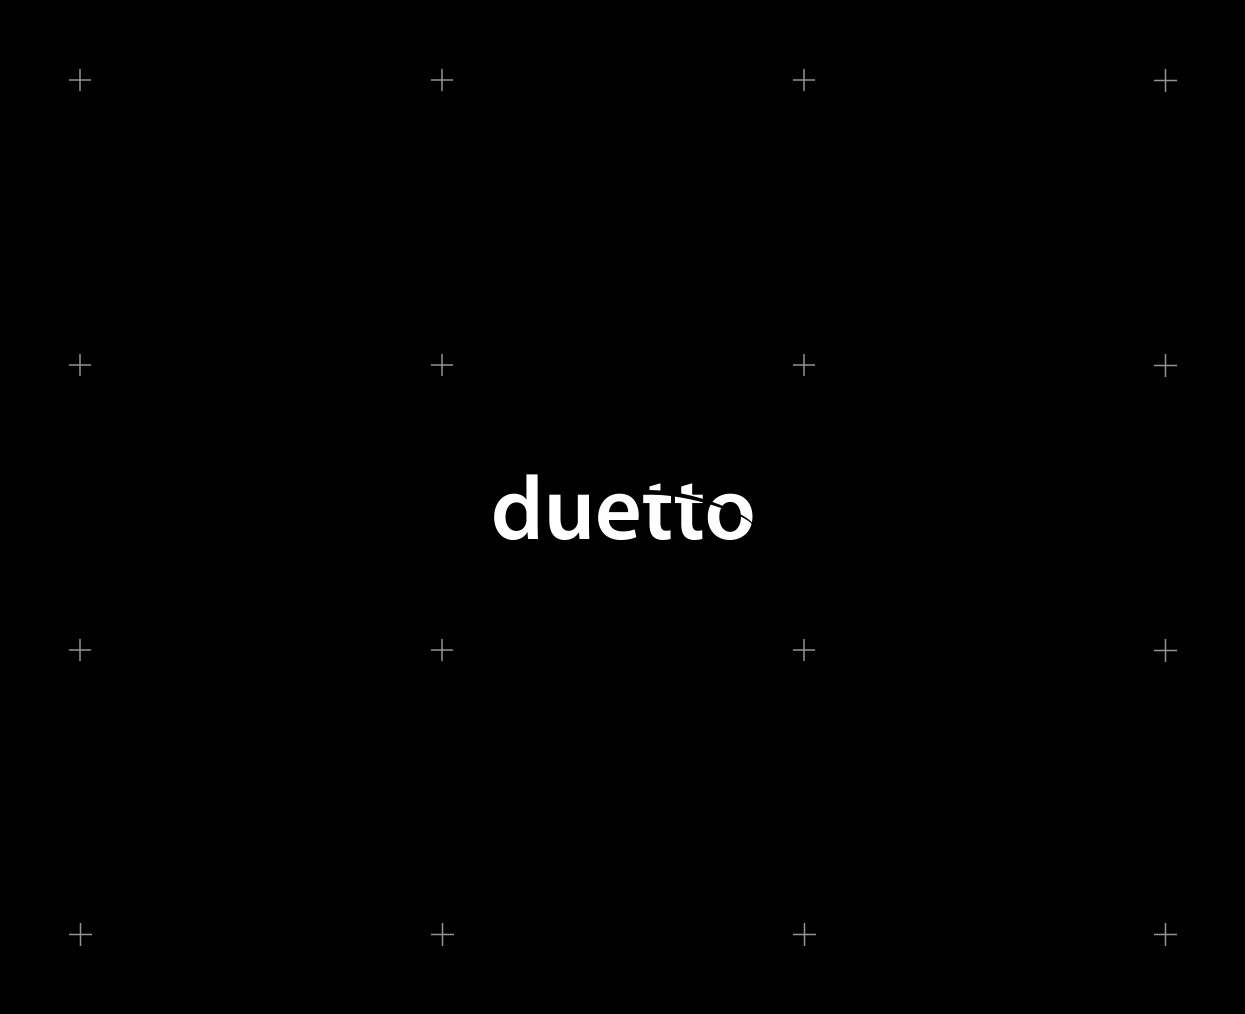 Duetto_830x66